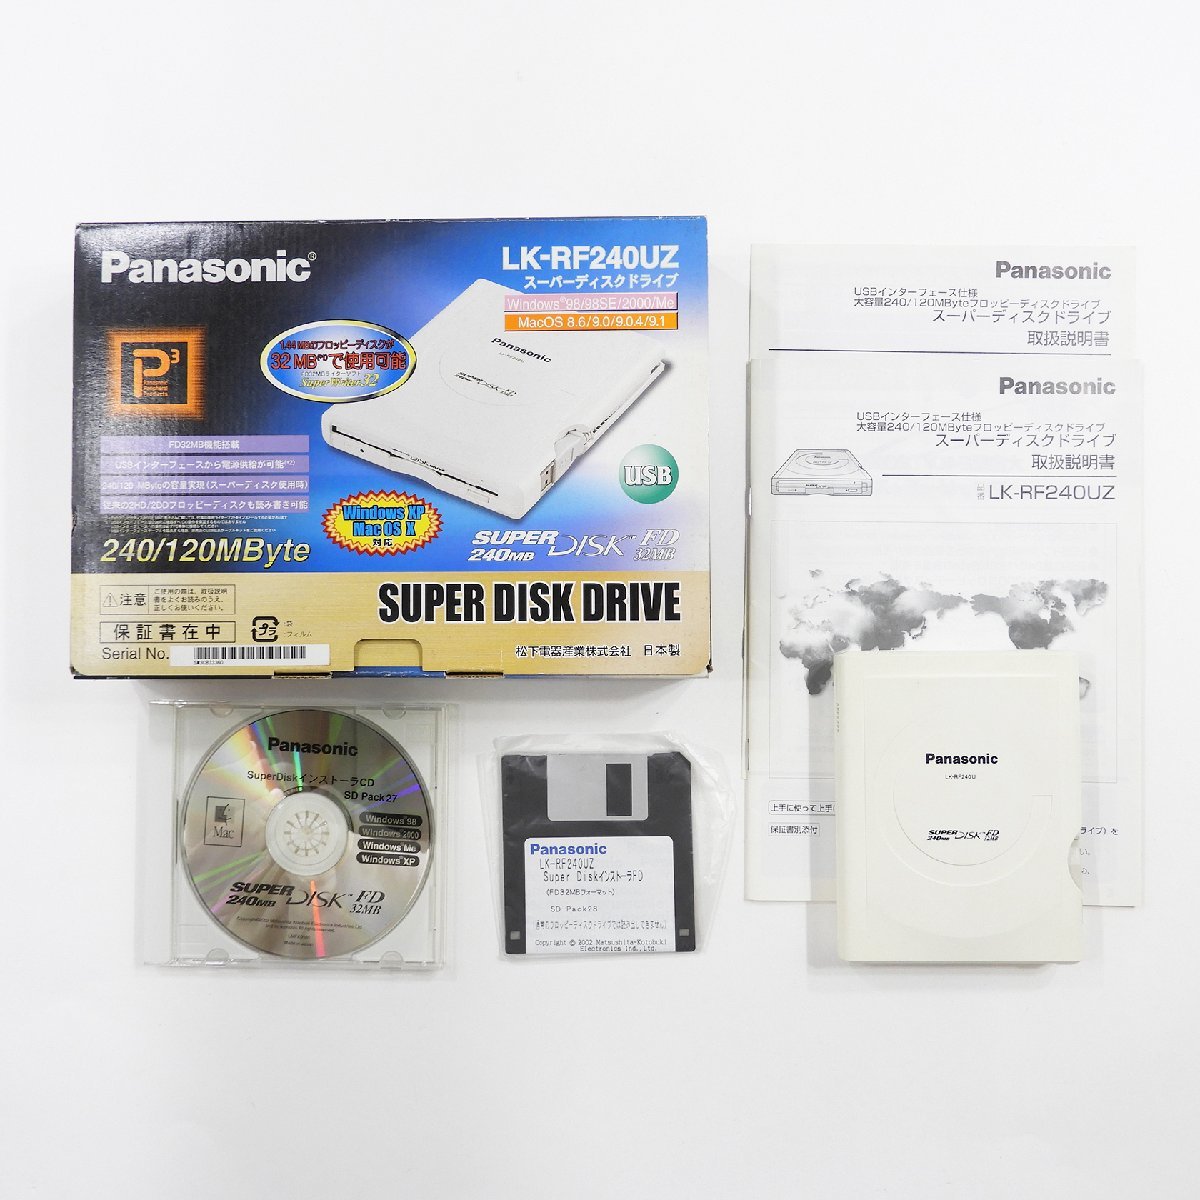 Panasonic パナソニック LK-RF-240U スーパーディスクドライブ 外付けFDD フロッピーディスクドライブ #14849 PC アクセサリー_画像1